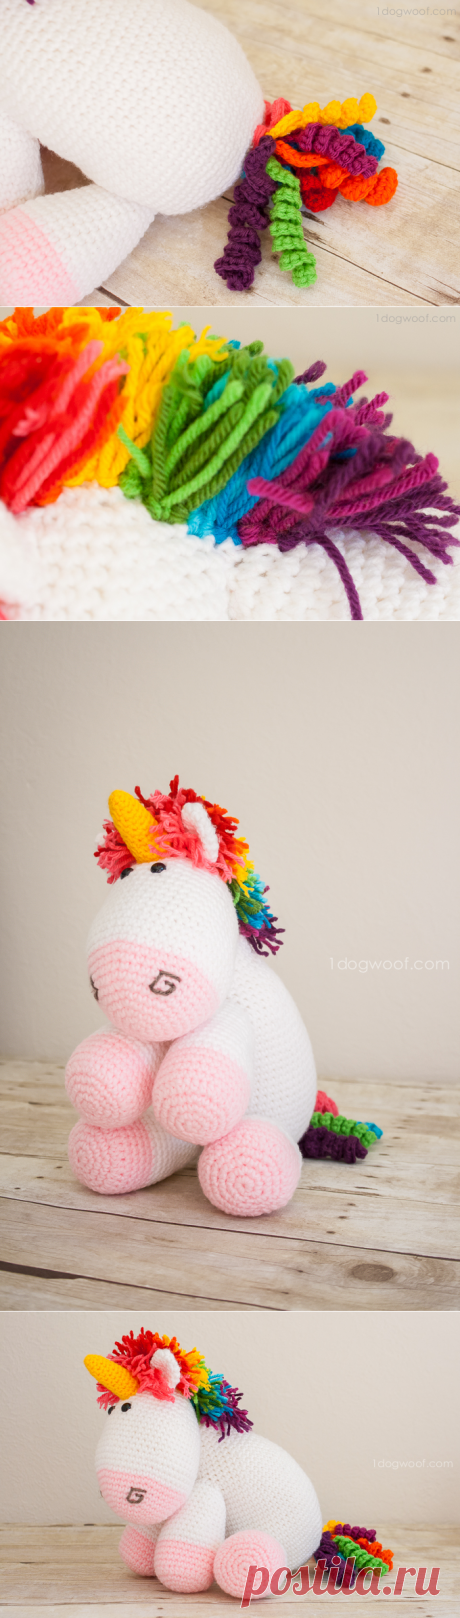 Rainbow Cuddles Crochet Unicorn Pattern - One Dog Woof
Симпатичный единорог. Полное описание, интересные приемы вязания